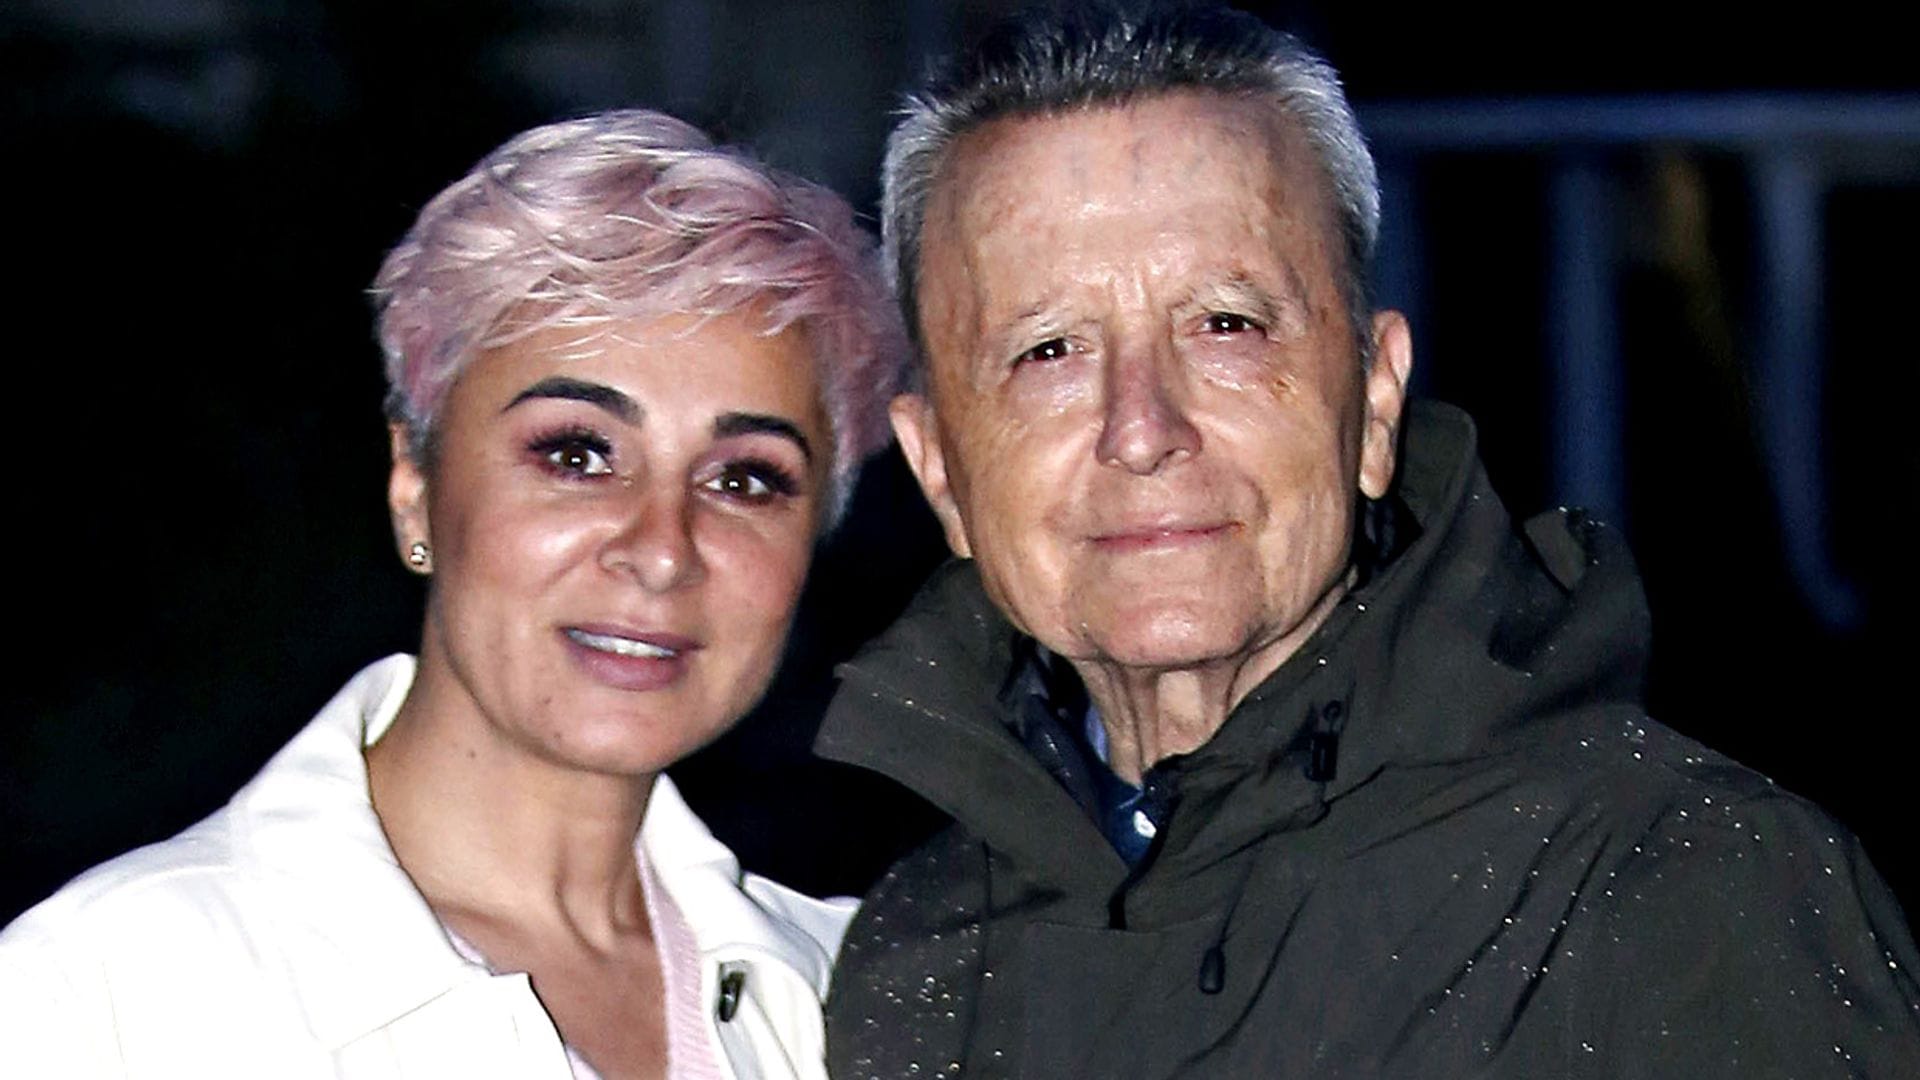 El claro mensaje de José Ortega Cano a su mujer, Ana María Aldón: 'Te amo, vamos a querernos y juntarnos'